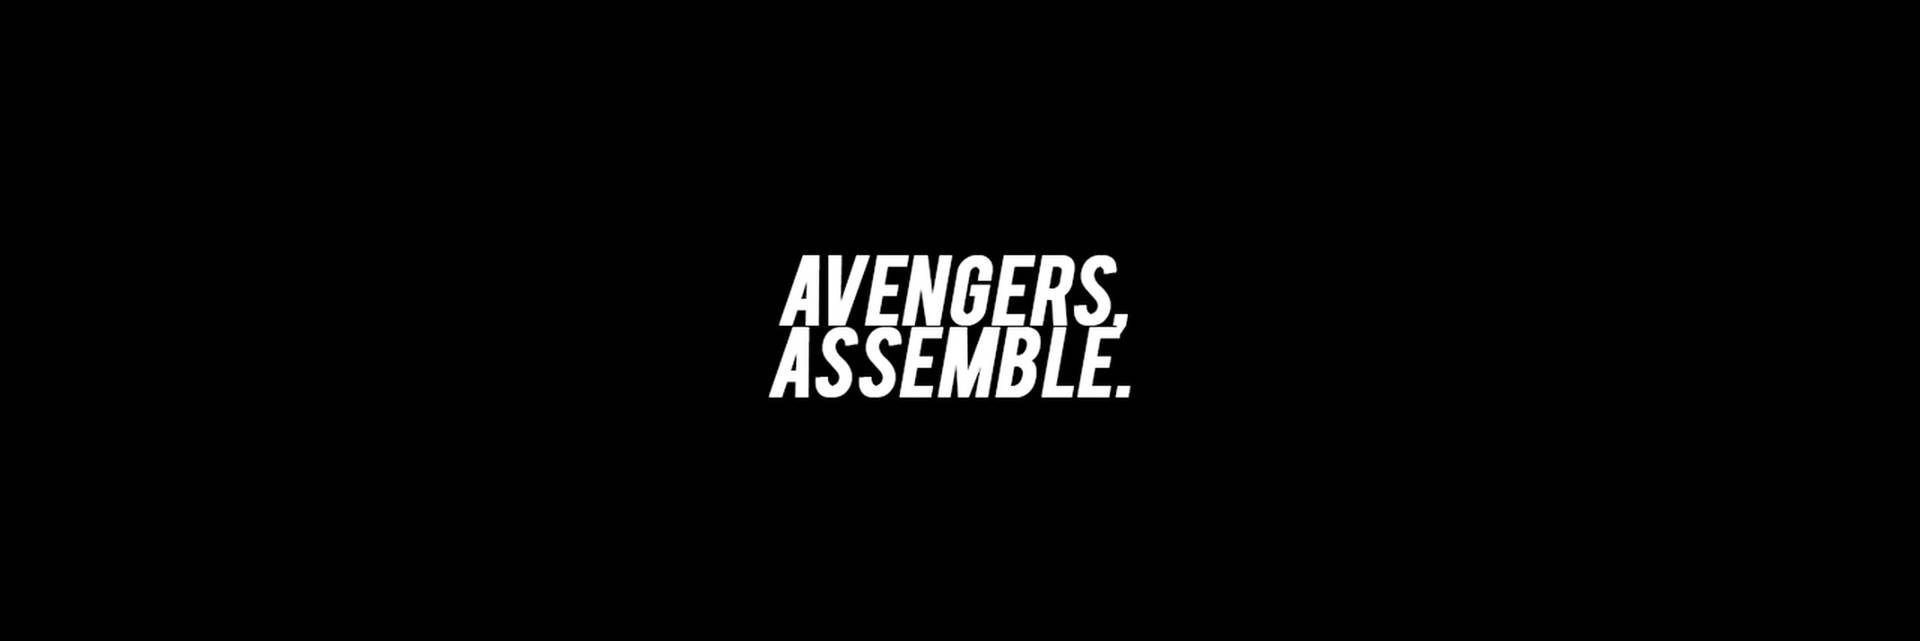 Avengersversammeln Sich In Schwarz Und Weiß. Wallpaper